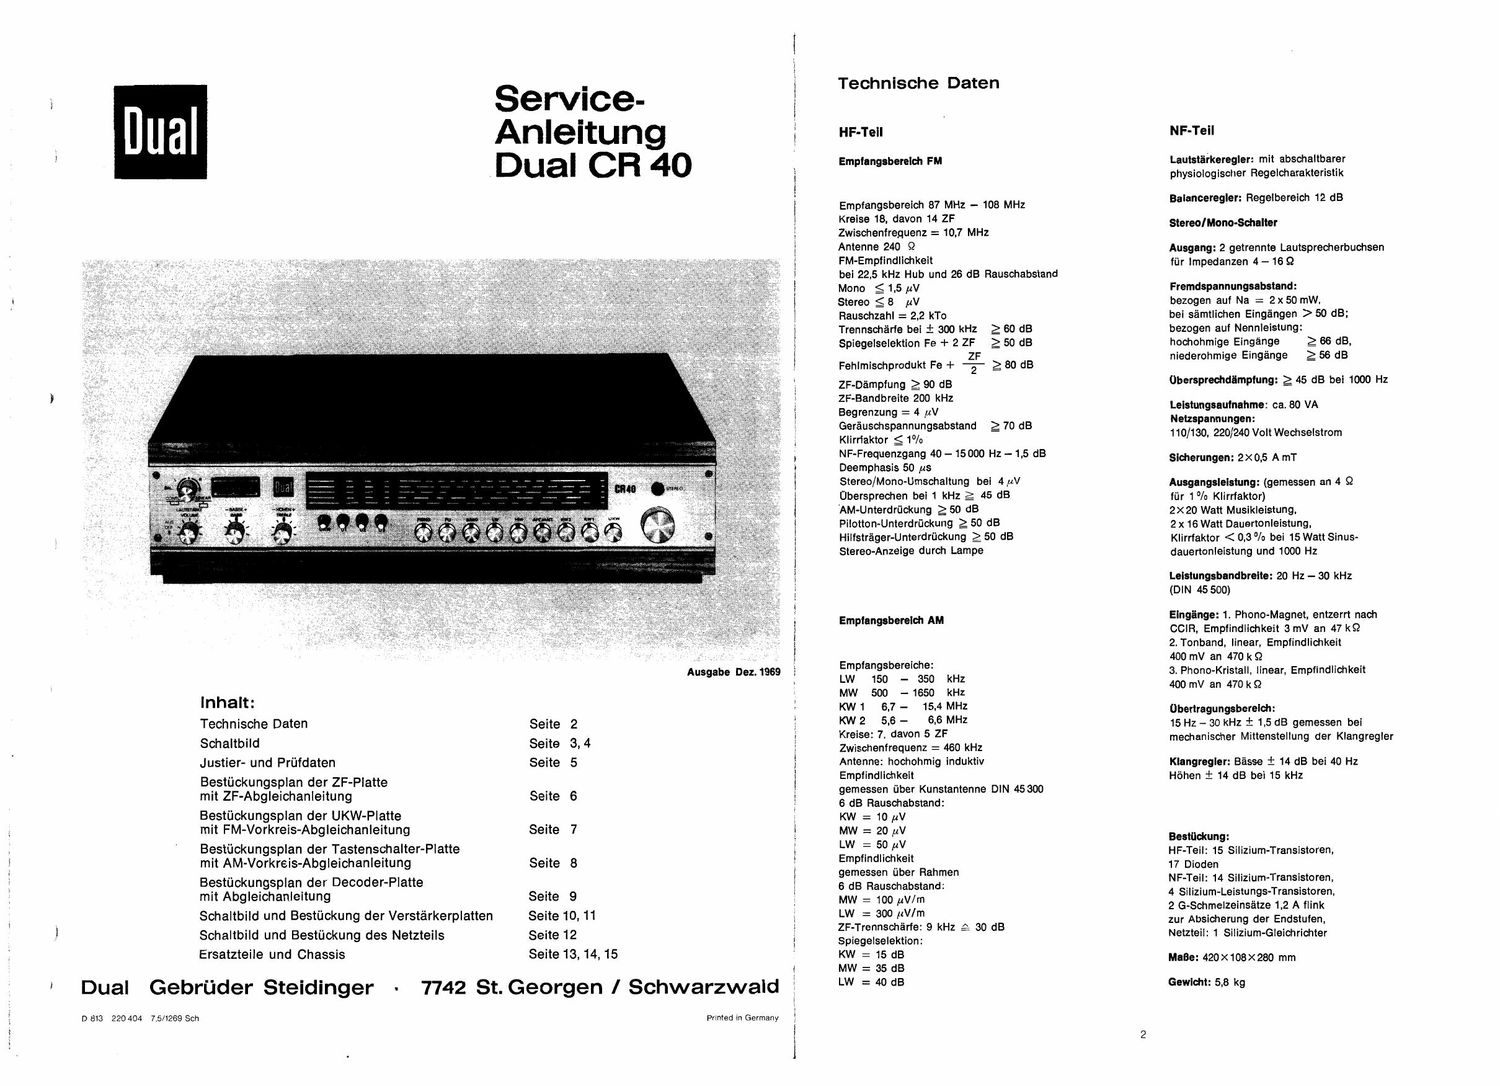 Service Manual-Anleitung für Dual CR 40 